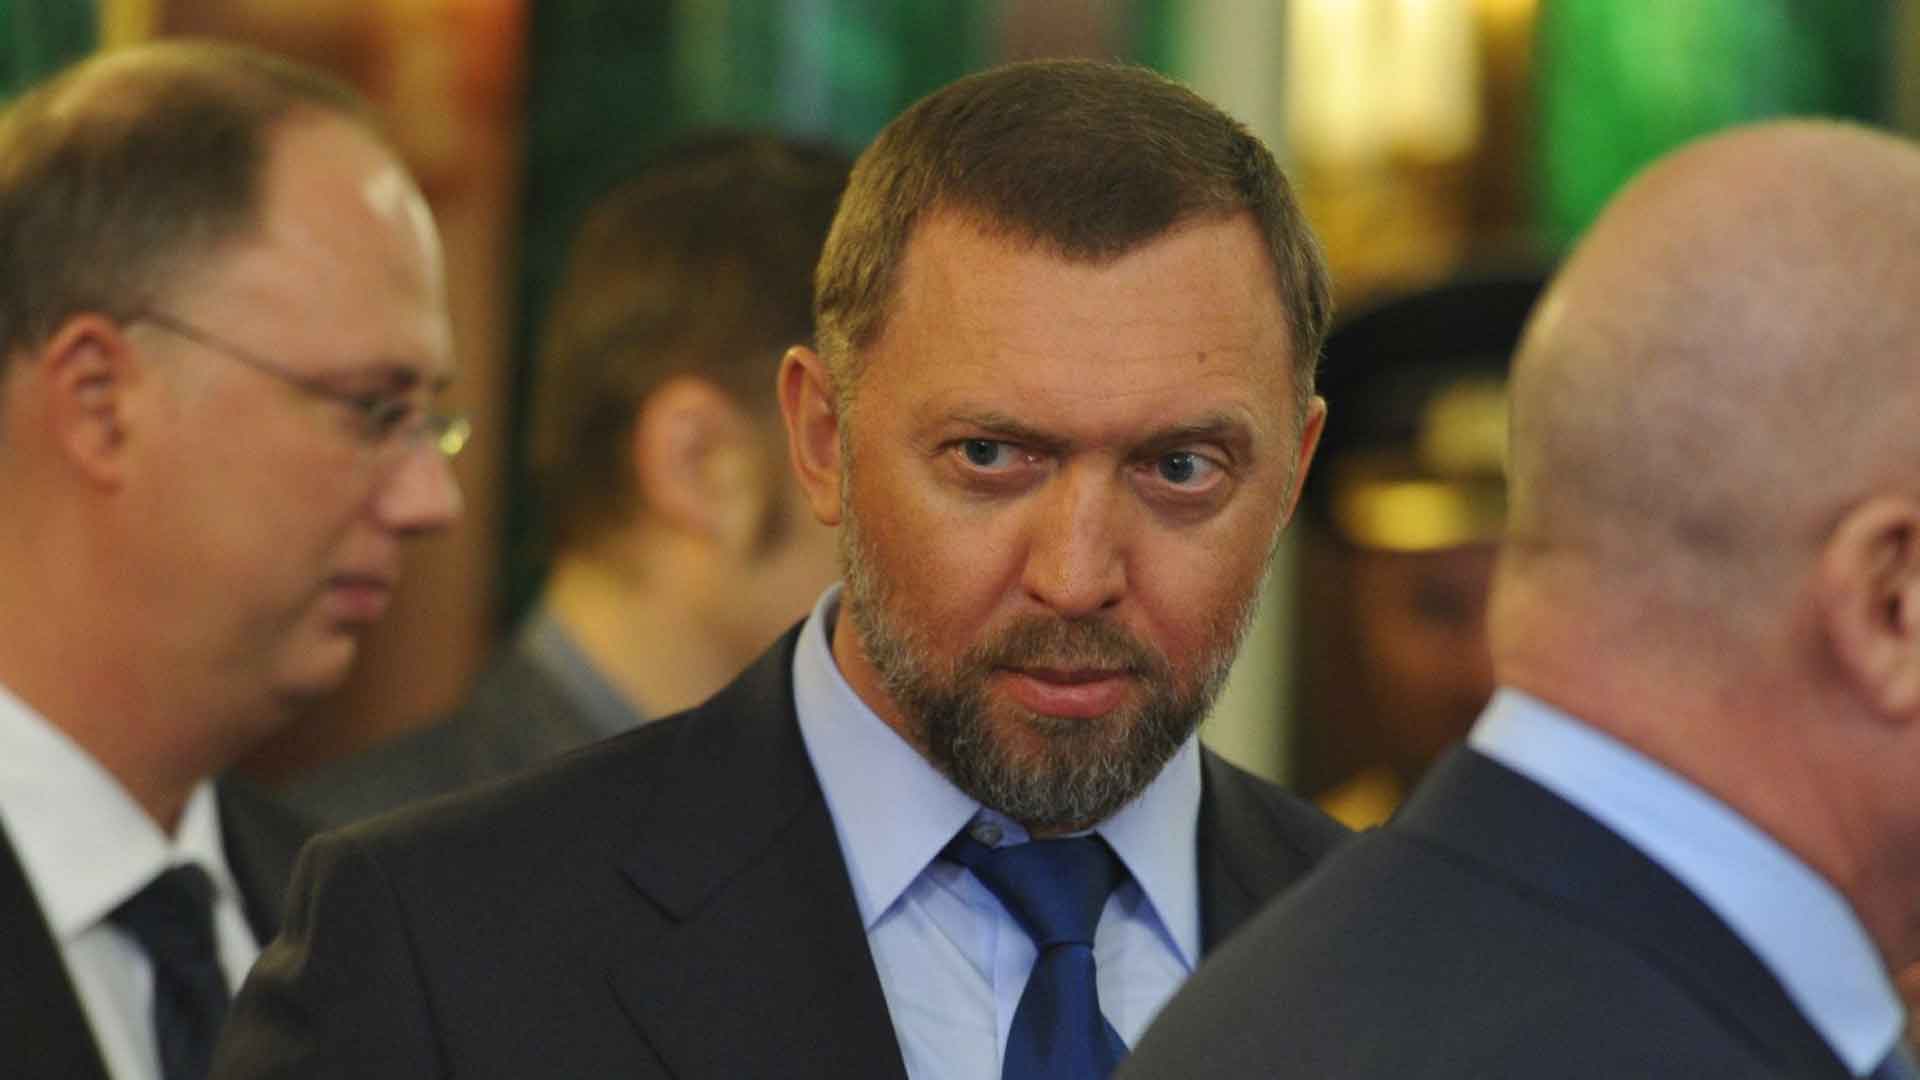 Представитель истца пожелал политику скорейшего возвращения из больницы Фото: © GLOBAL LOOK press / Komsomolskaya Pravda